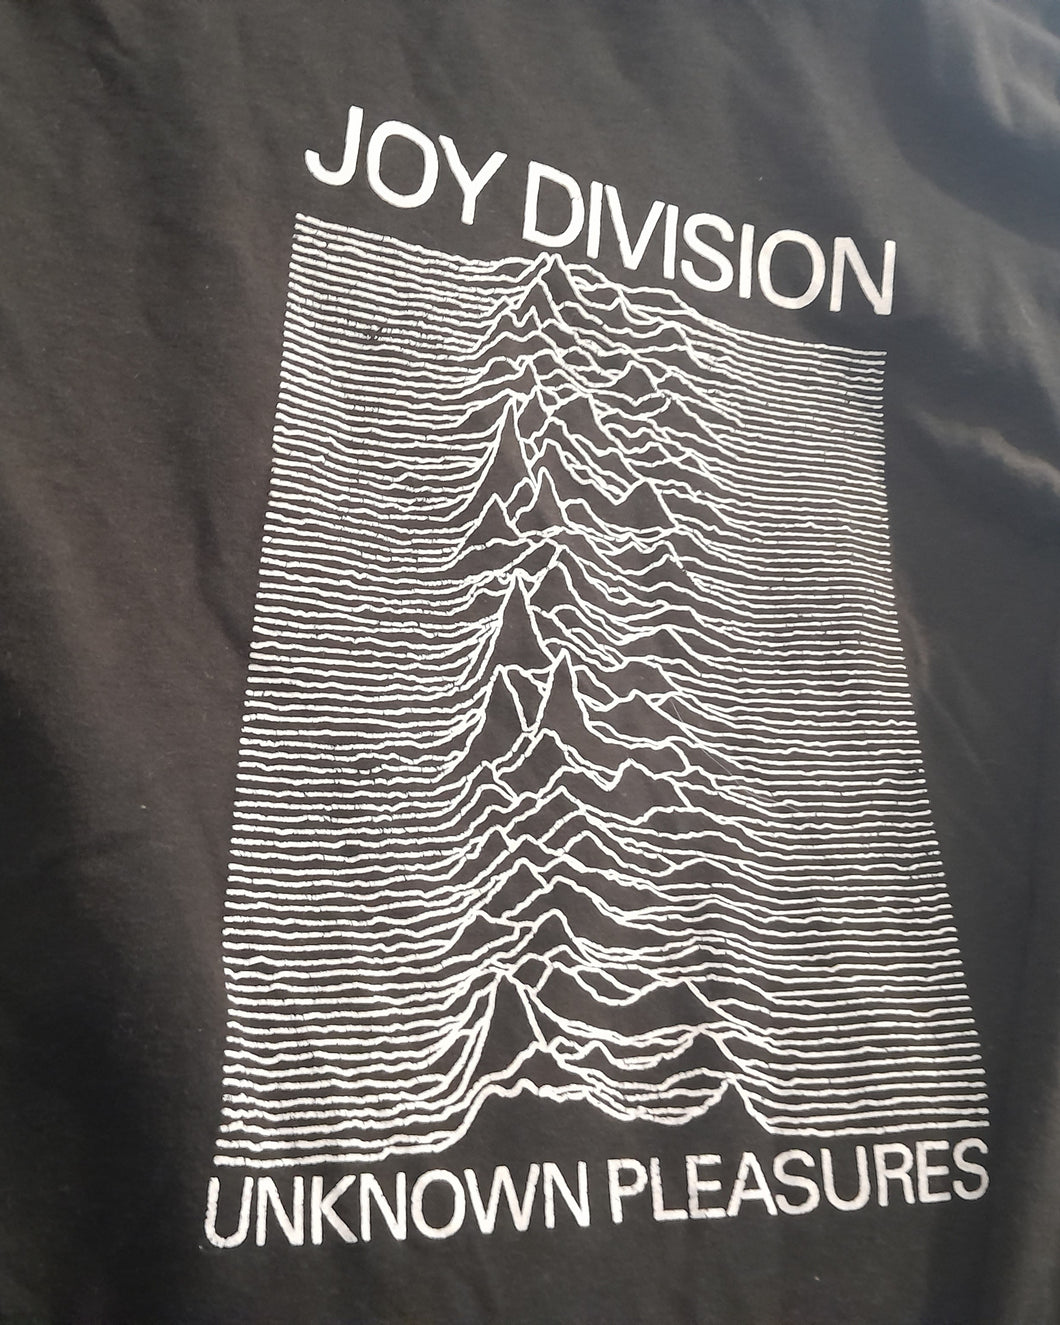 Joy Division T Shirt